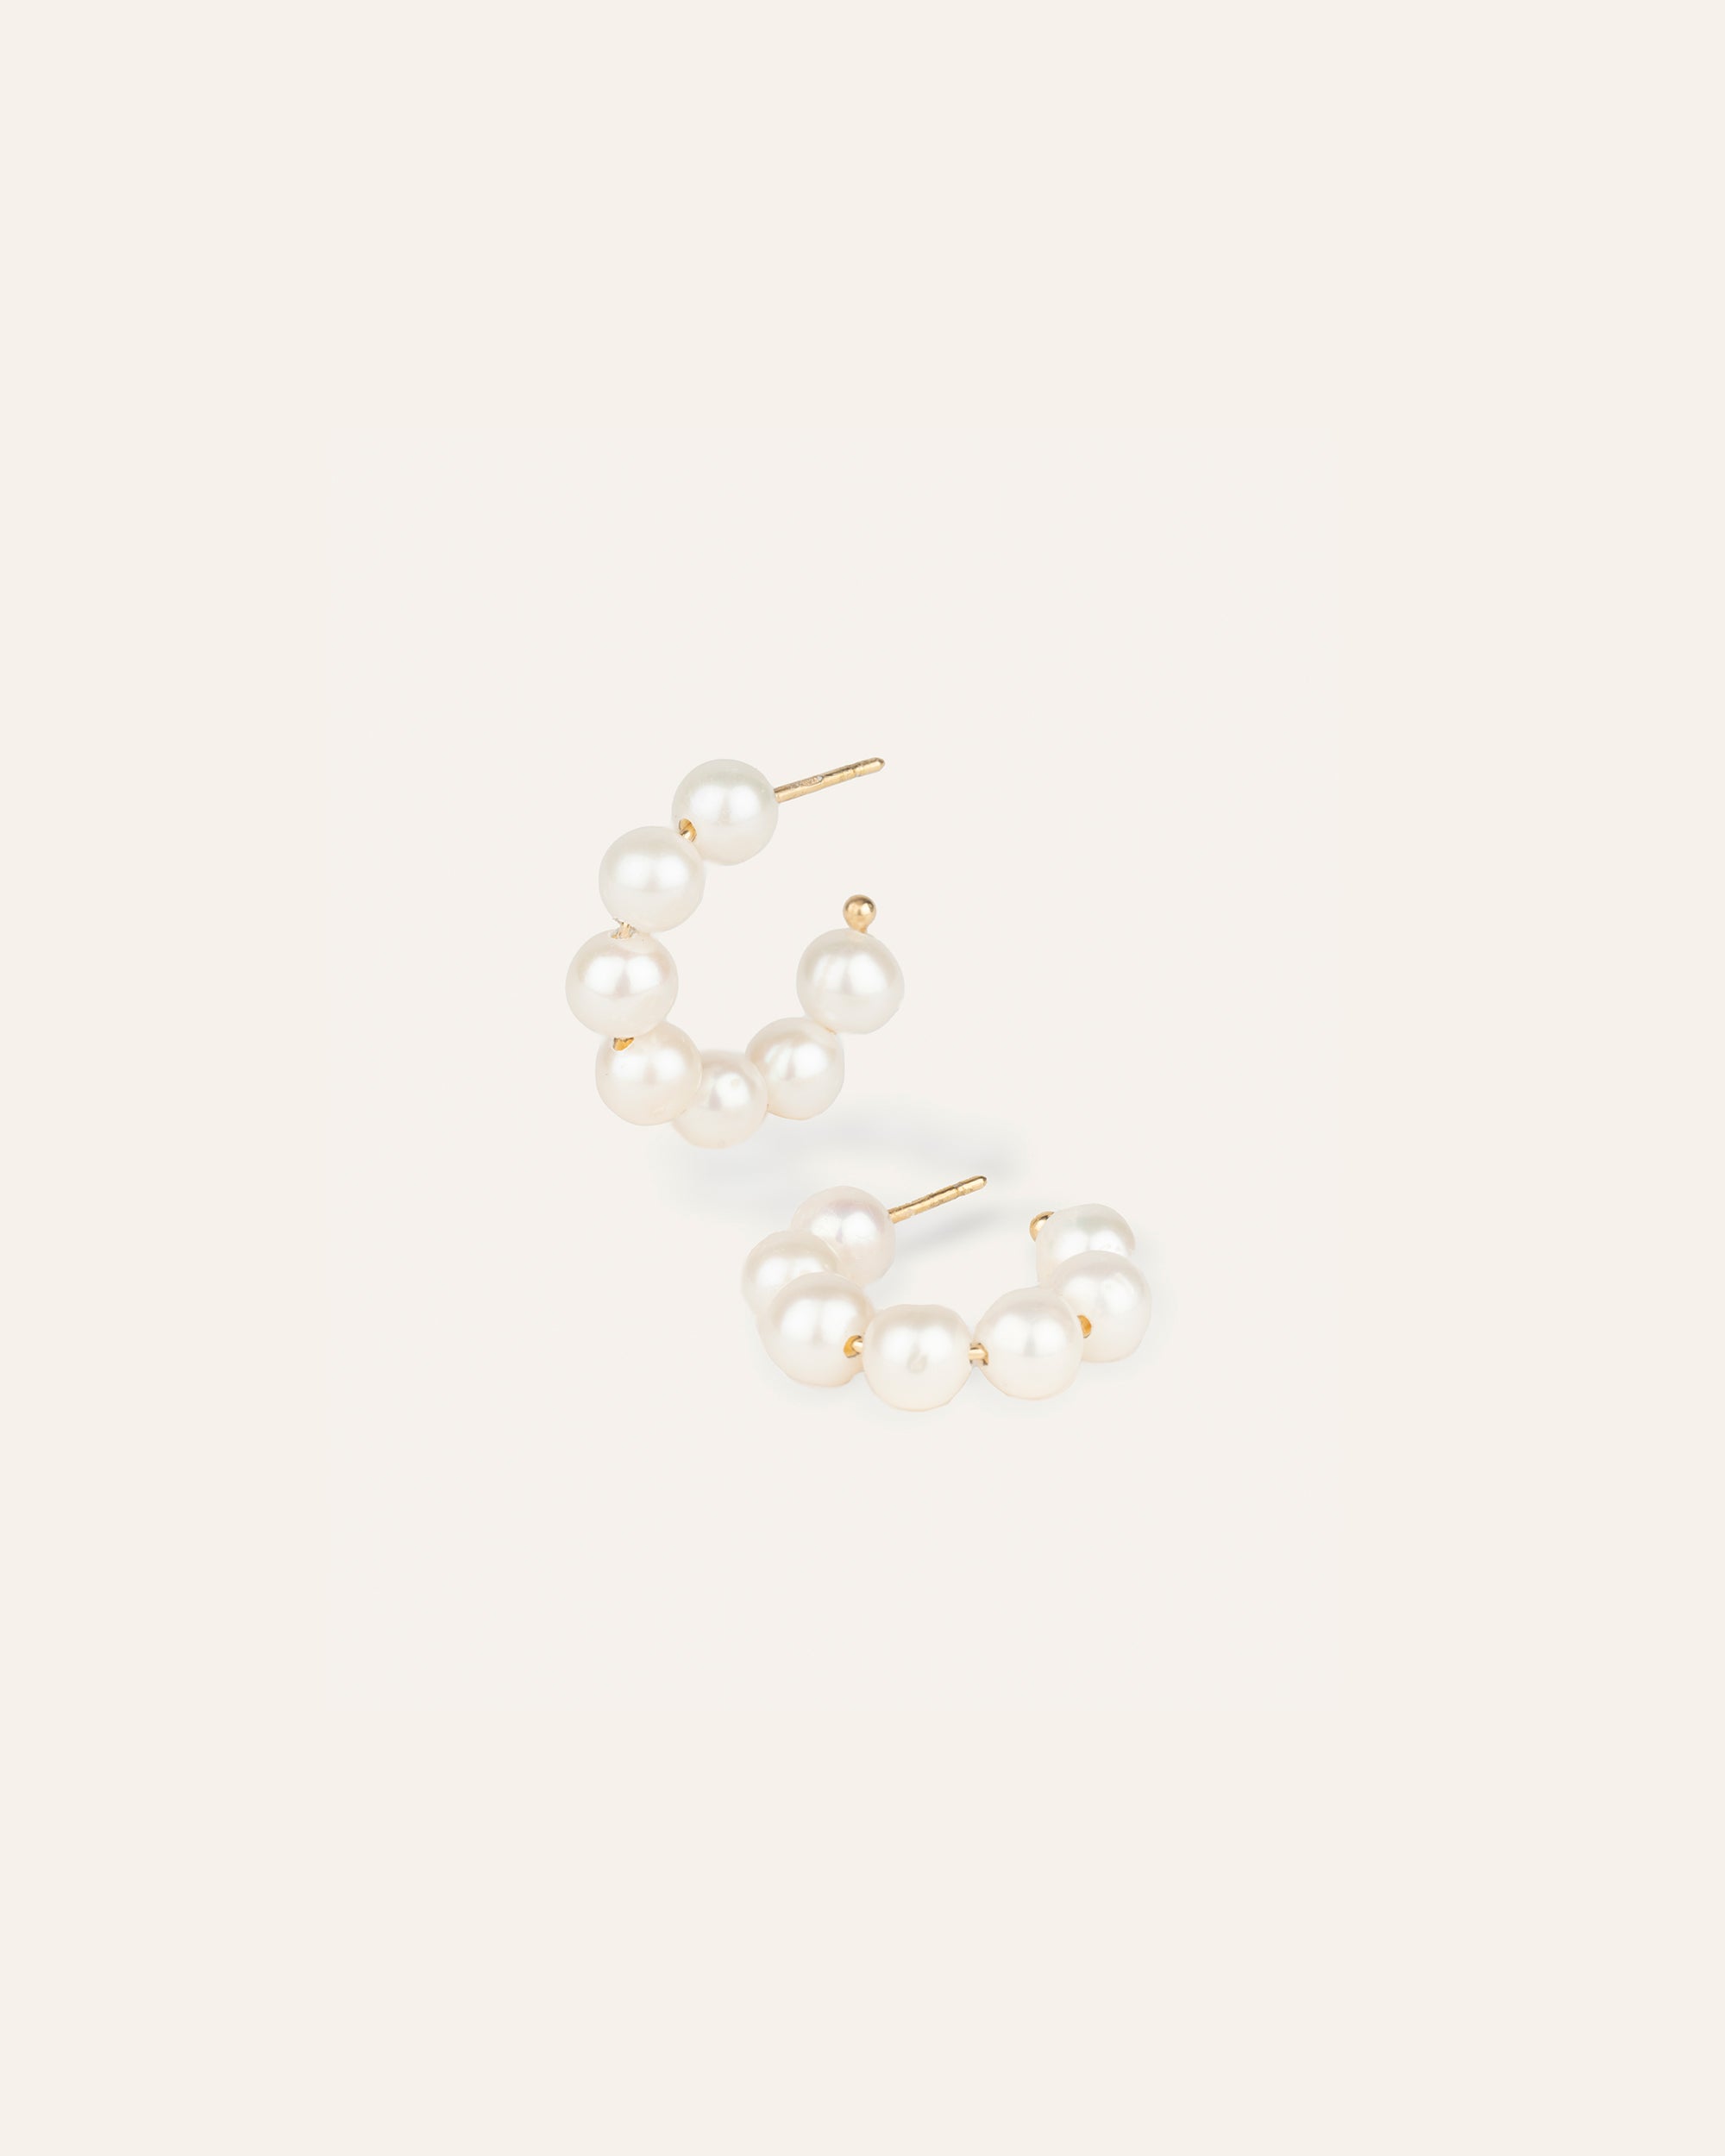 Créoles ornées de perles de culture en plaqué or 3 microns et made in France.